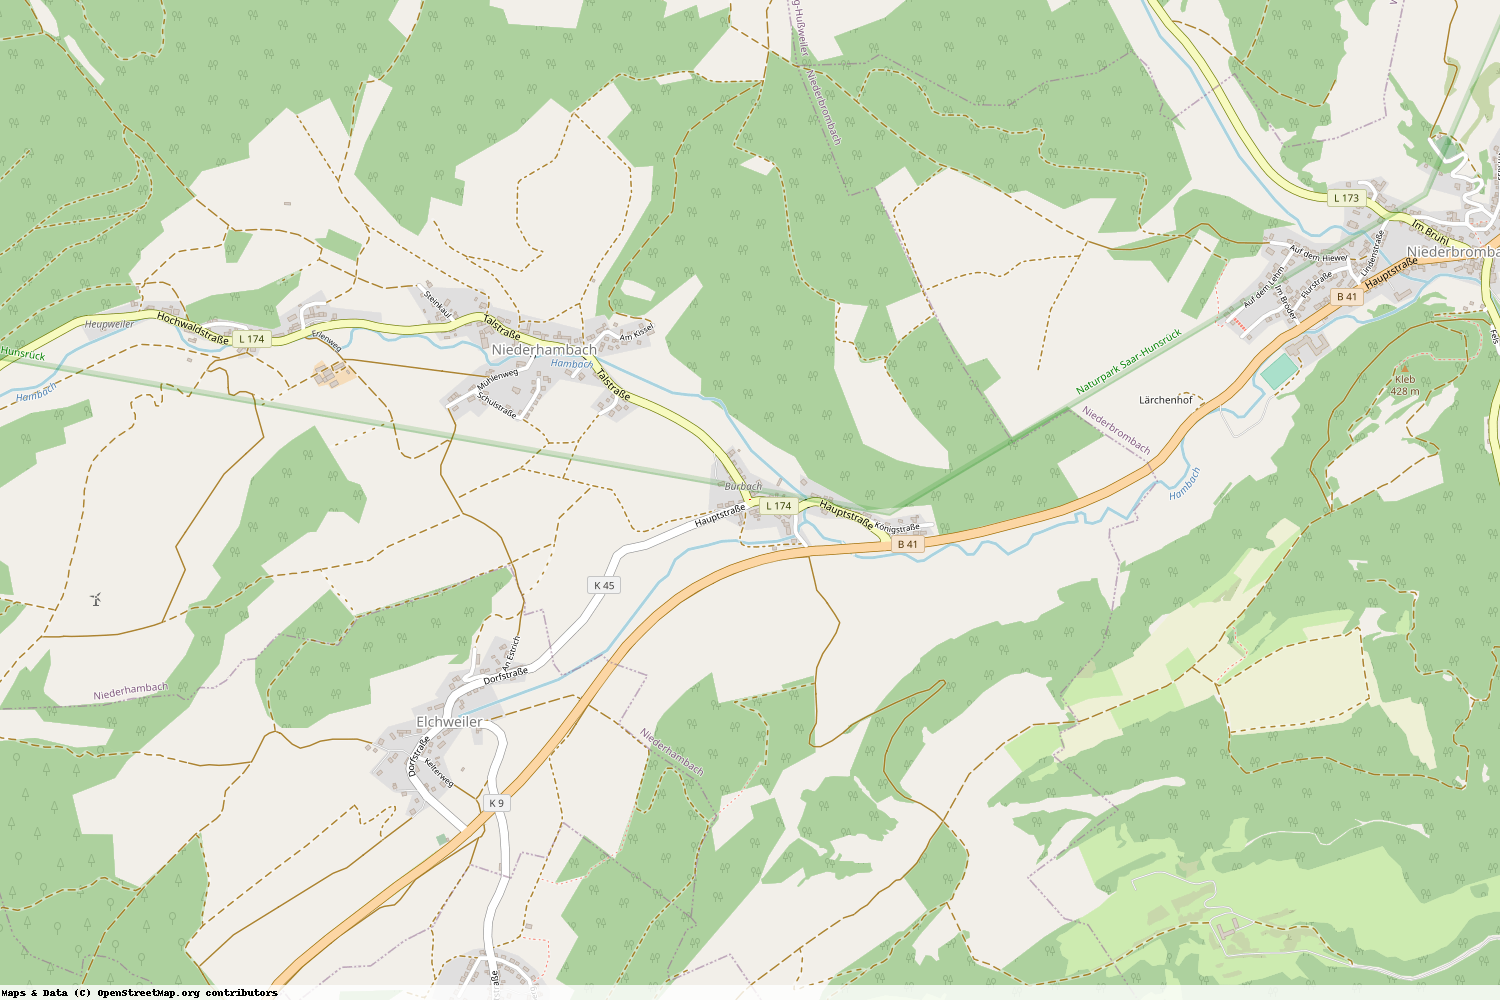 Ist gerade Stromausfall in Rheinland-Pfalz - Birkenfeld - Niederhambach?